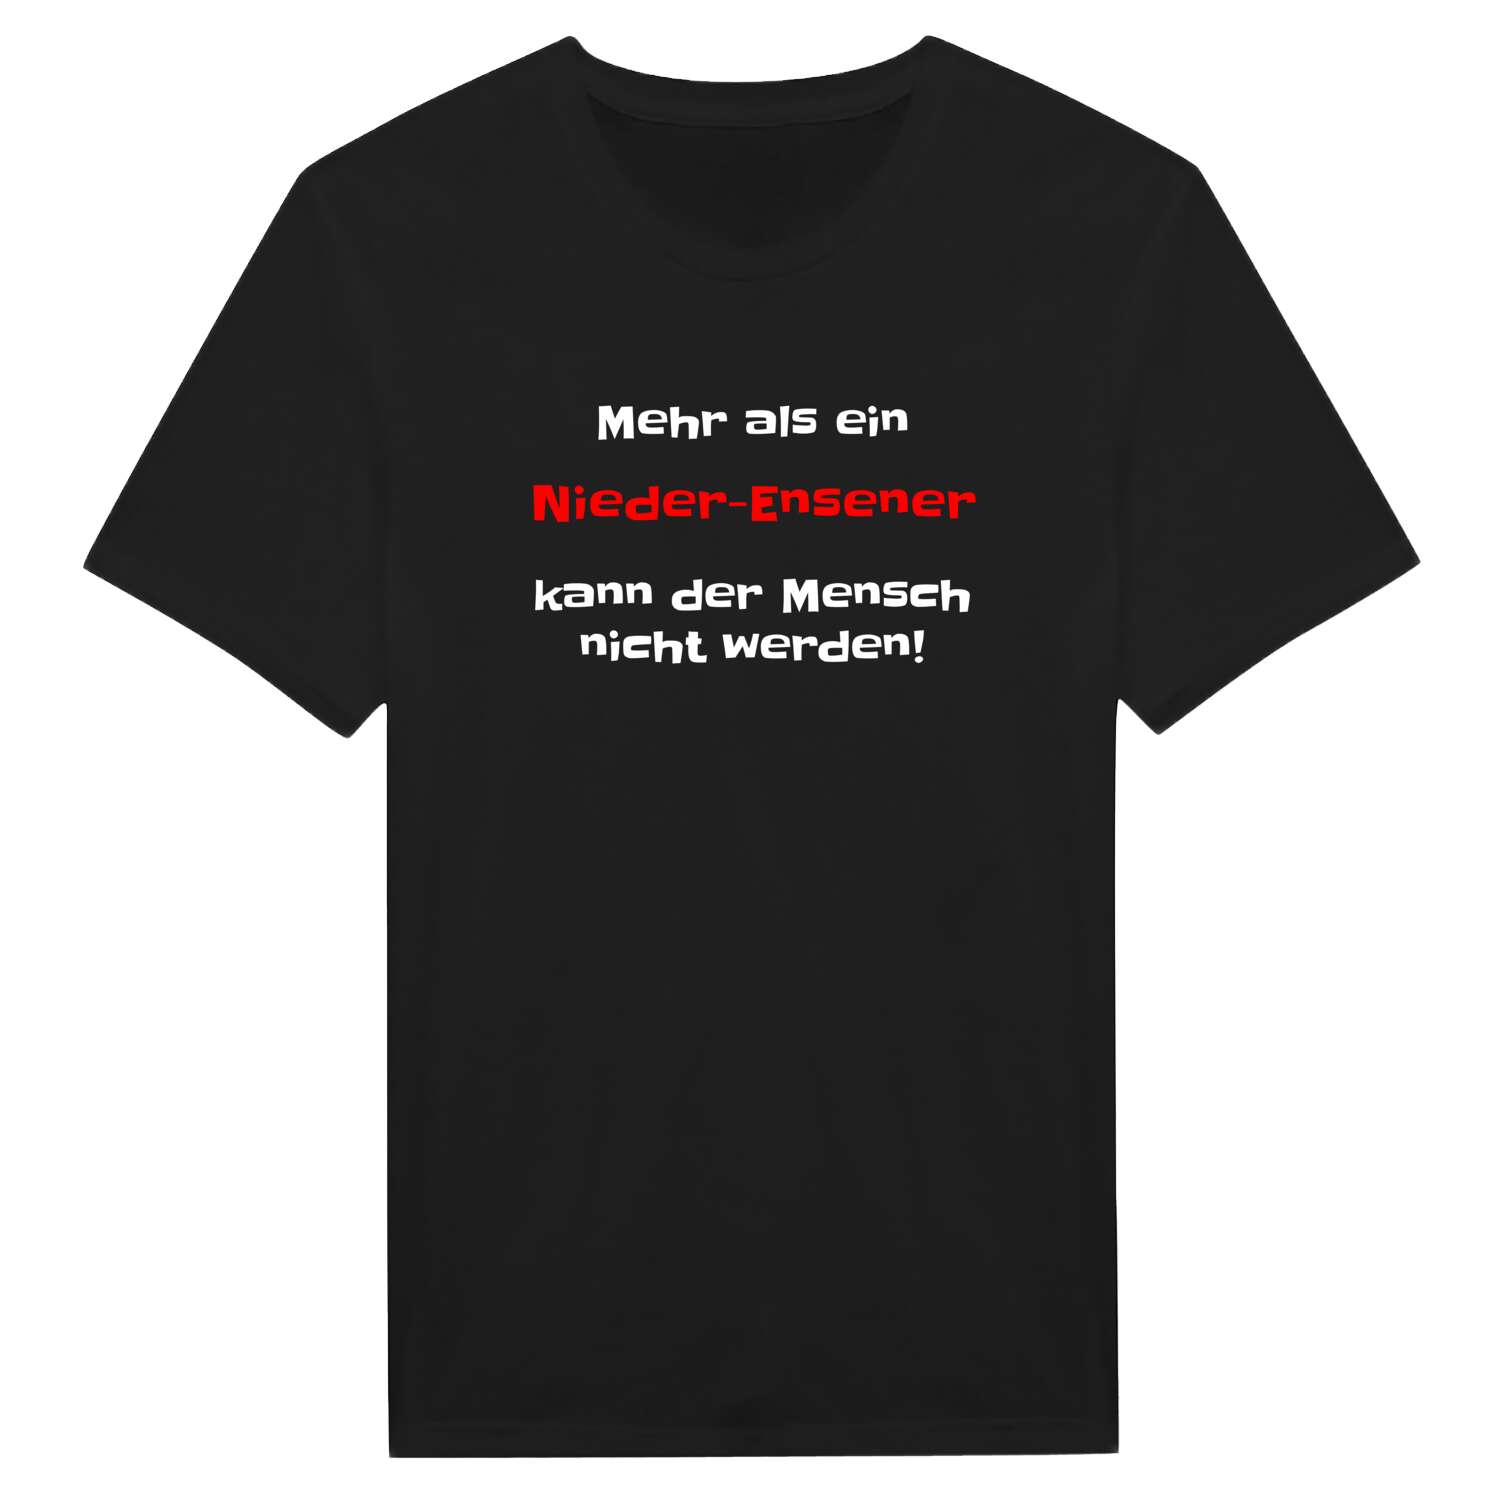 Nieder-Ense T-Shirt »Mehr als ein«